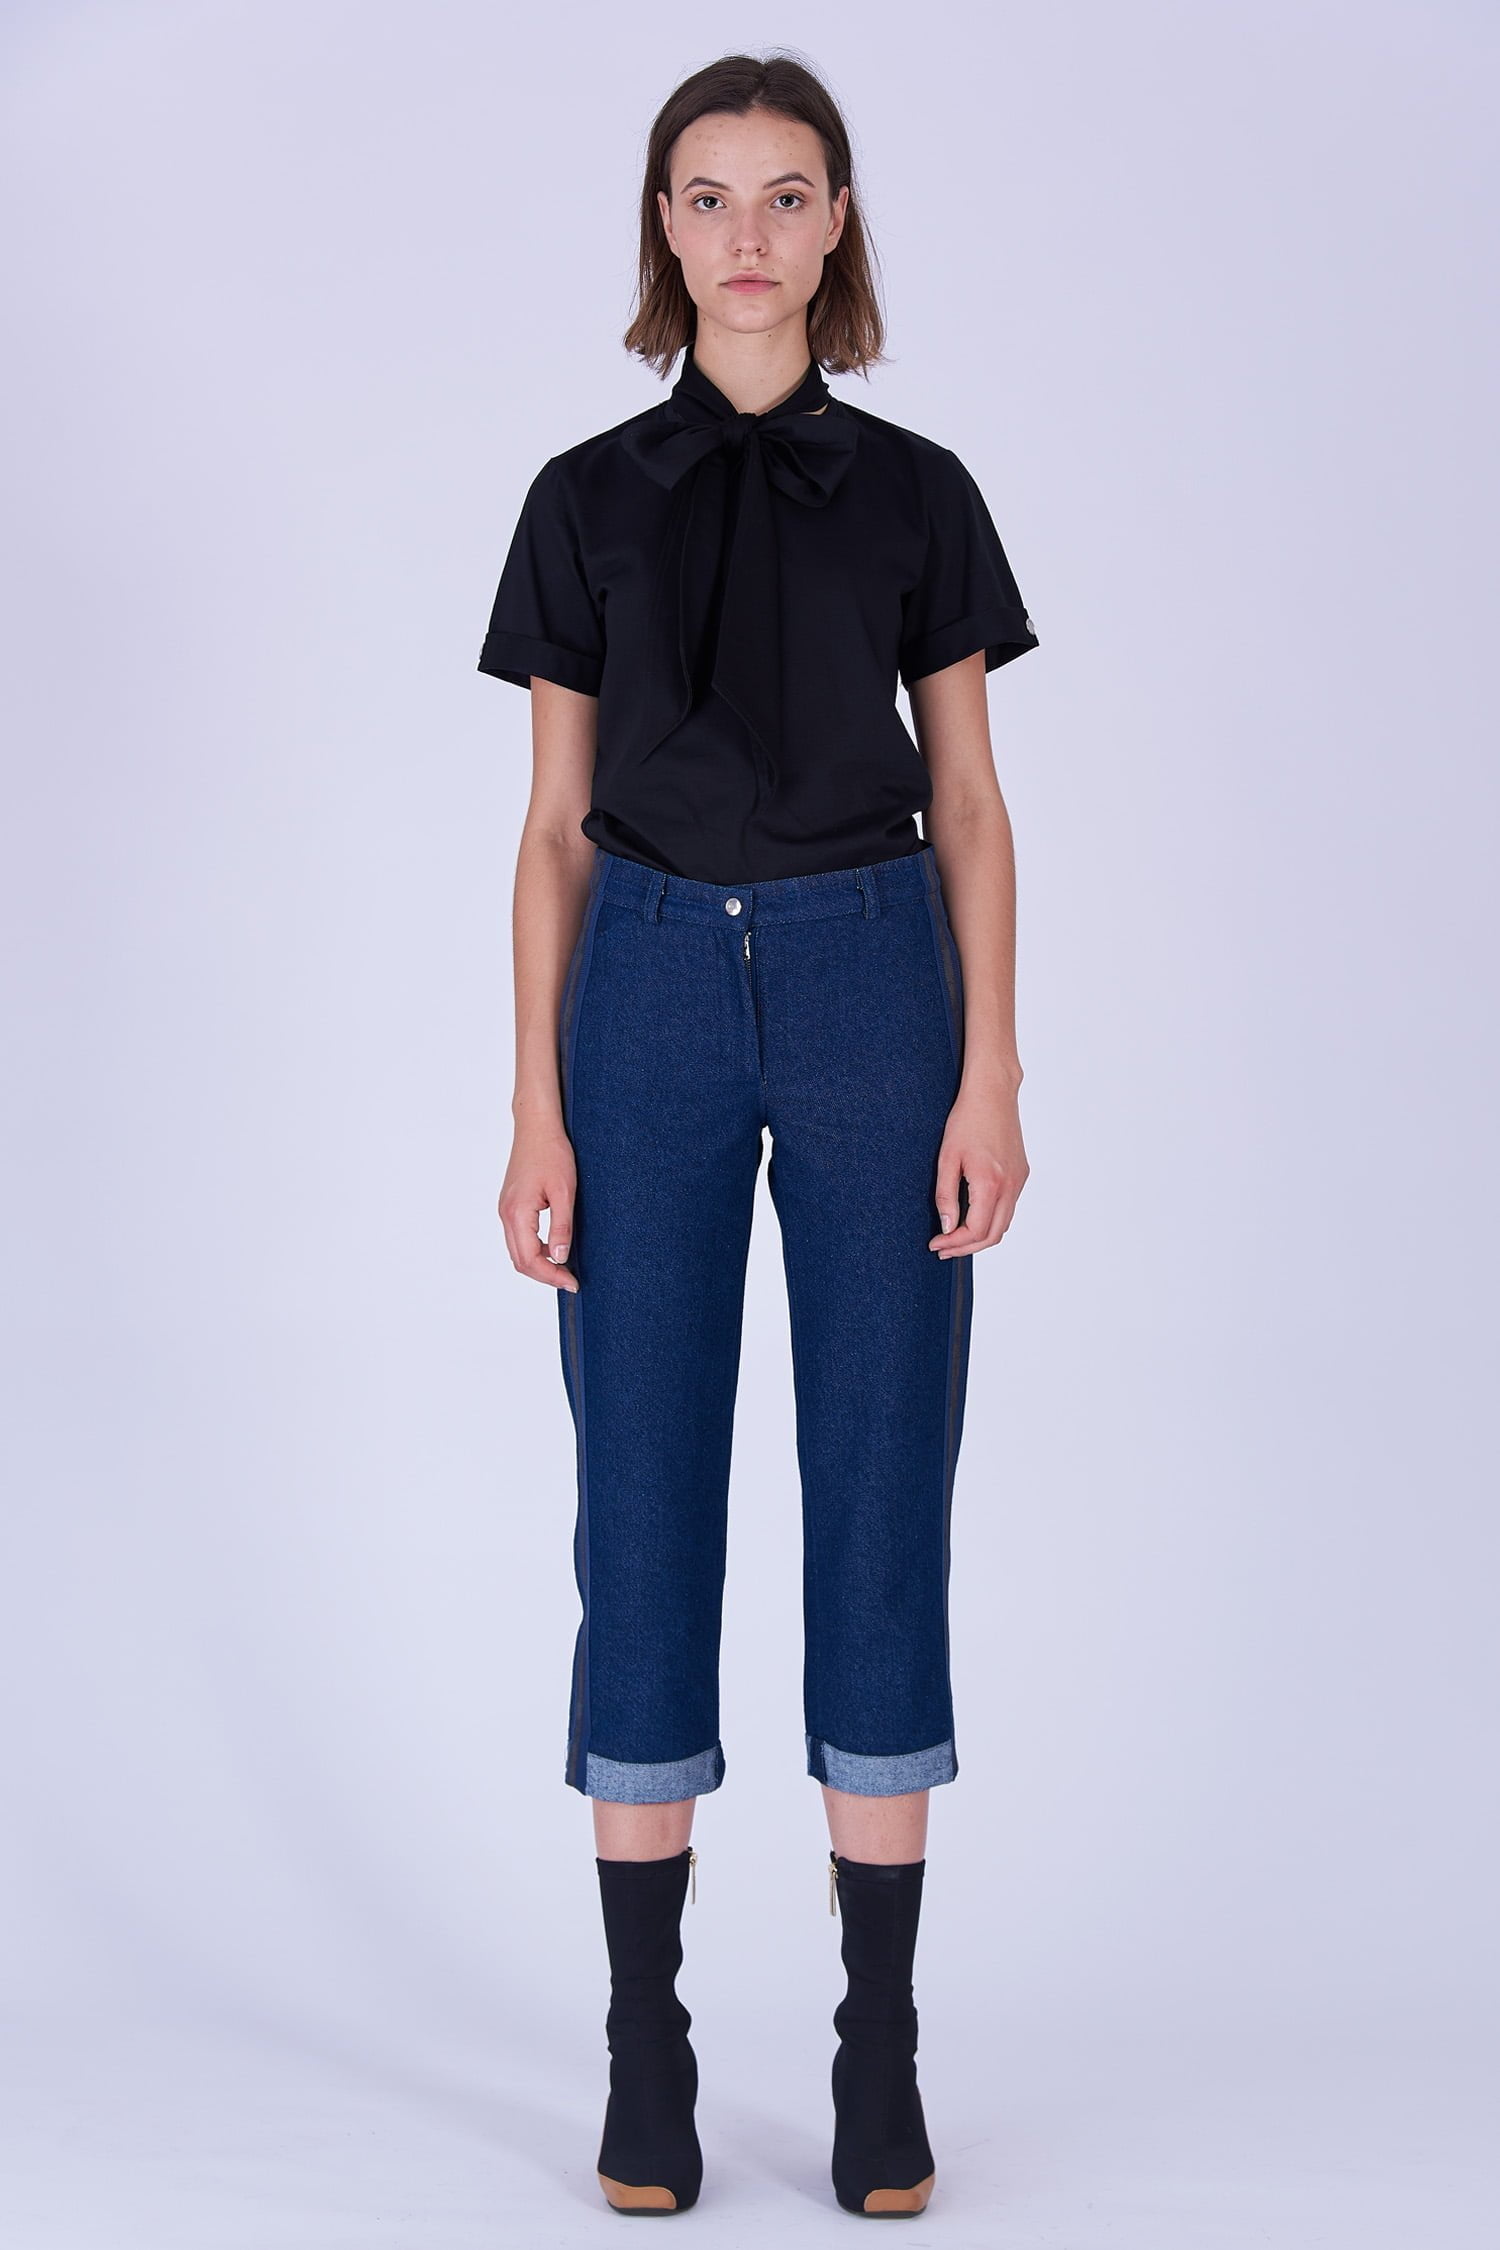 Acephala Fw19 20 Black T Shirt Bowtie Organic Czarny Kokarda Dark Blue Denim Trousers Stripe Niebieskie Jeansy Front 3